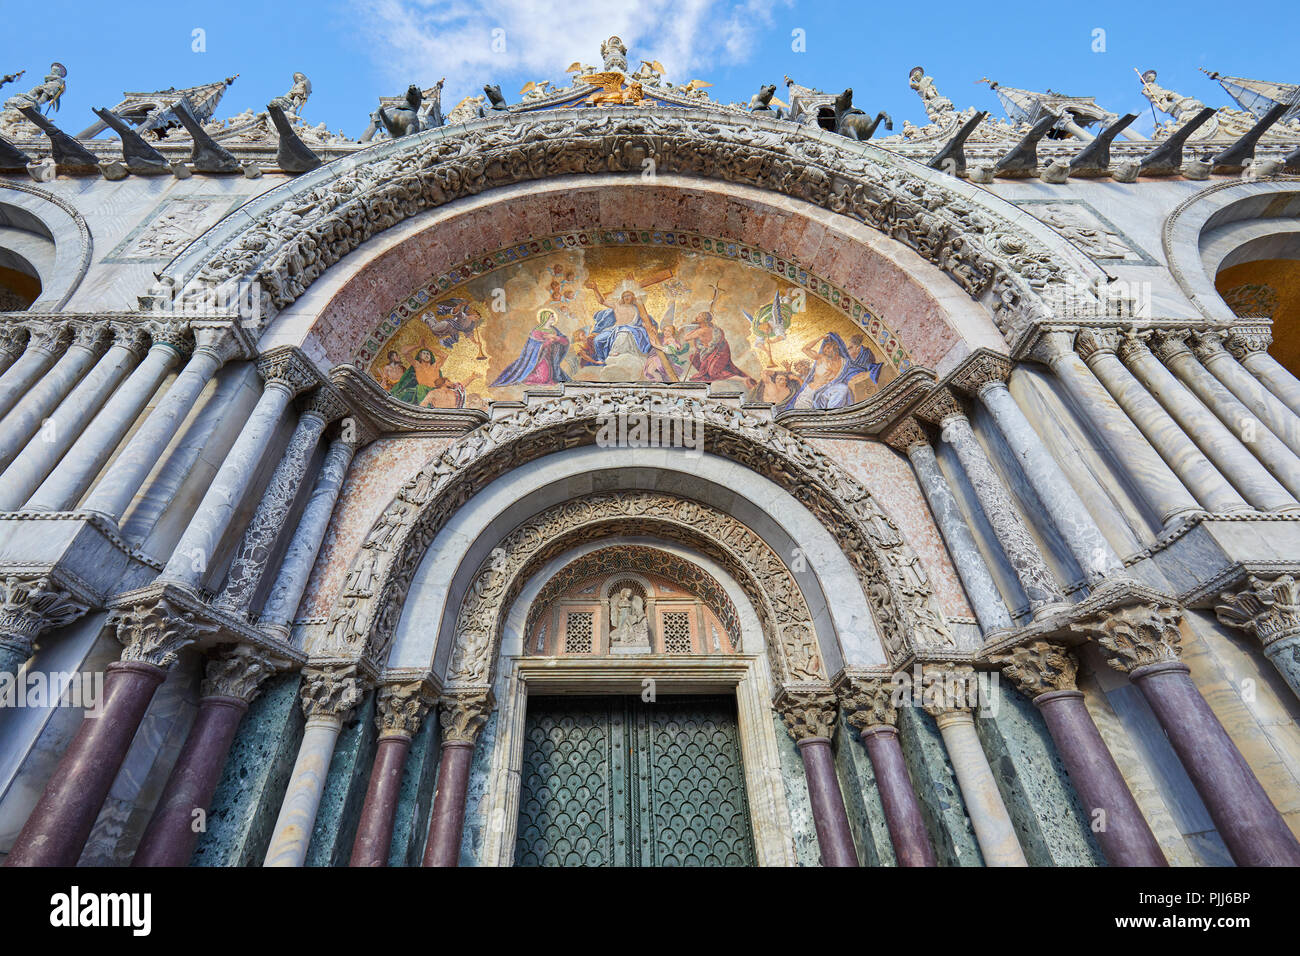 Der heilige Markus Basilika Fassade und Portal details mit goldenen, bunten Mosaiken, Marmorsäulen und Skulpturen in Venedig, Italien Stockfoto